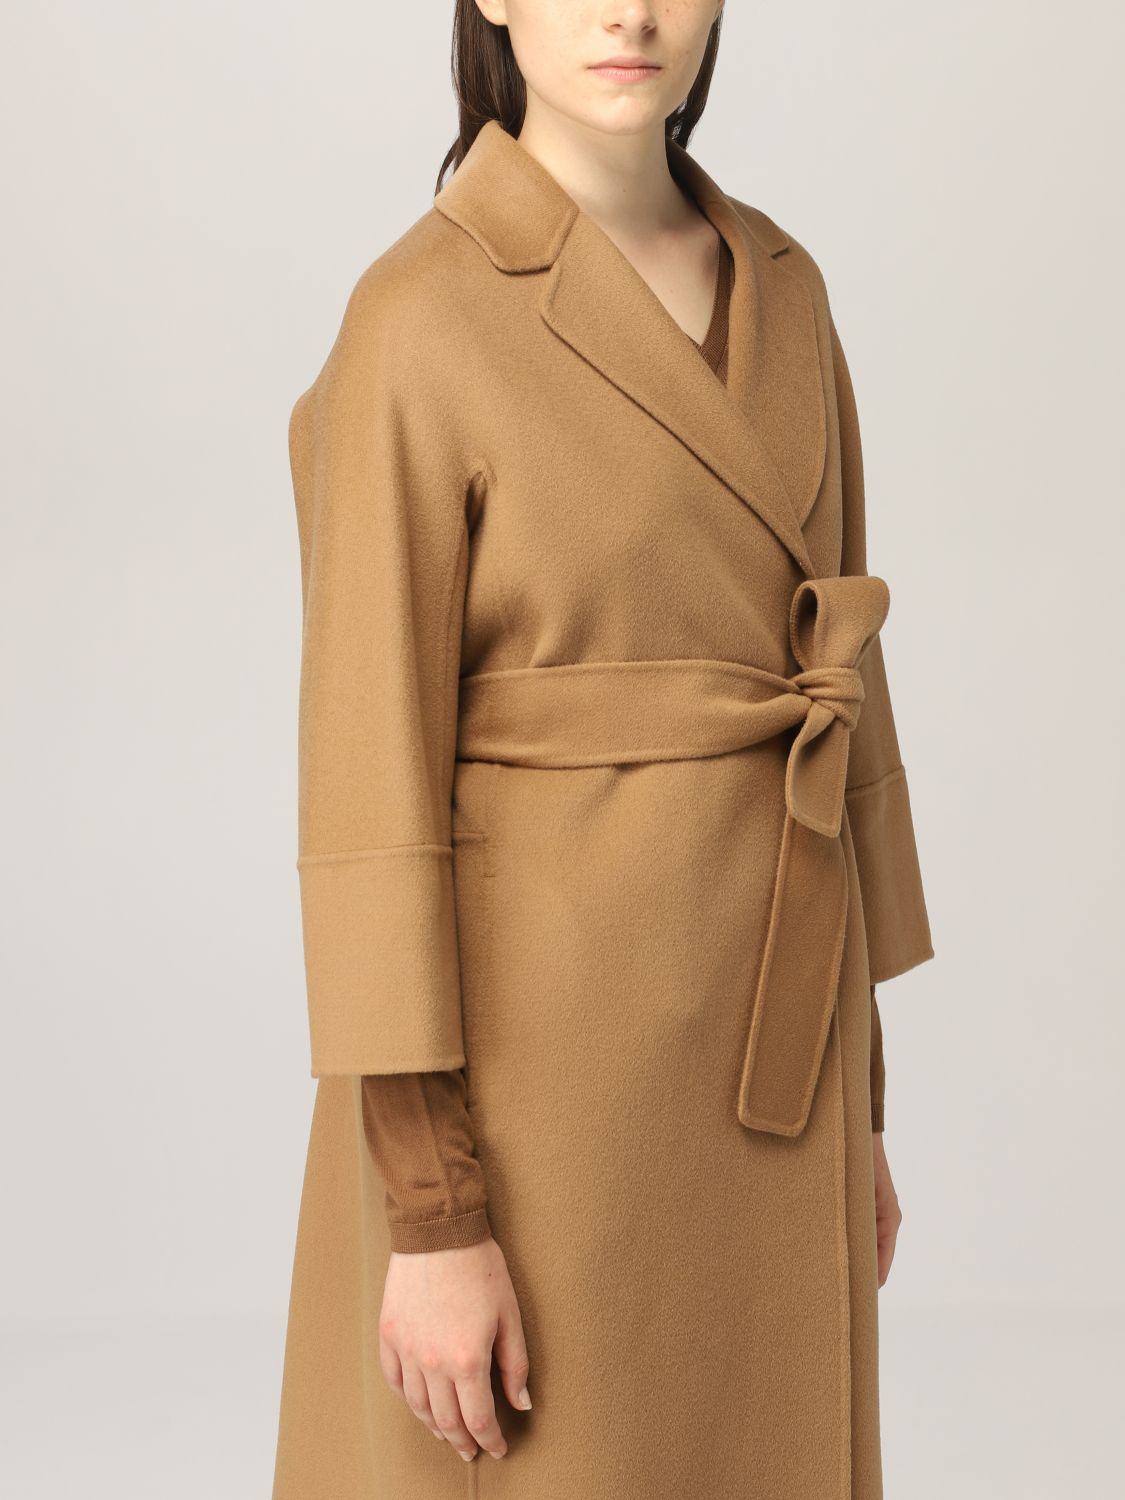 S MAX MARA: virgin wool wrap coat | Coat S Max Mara Women Camel 